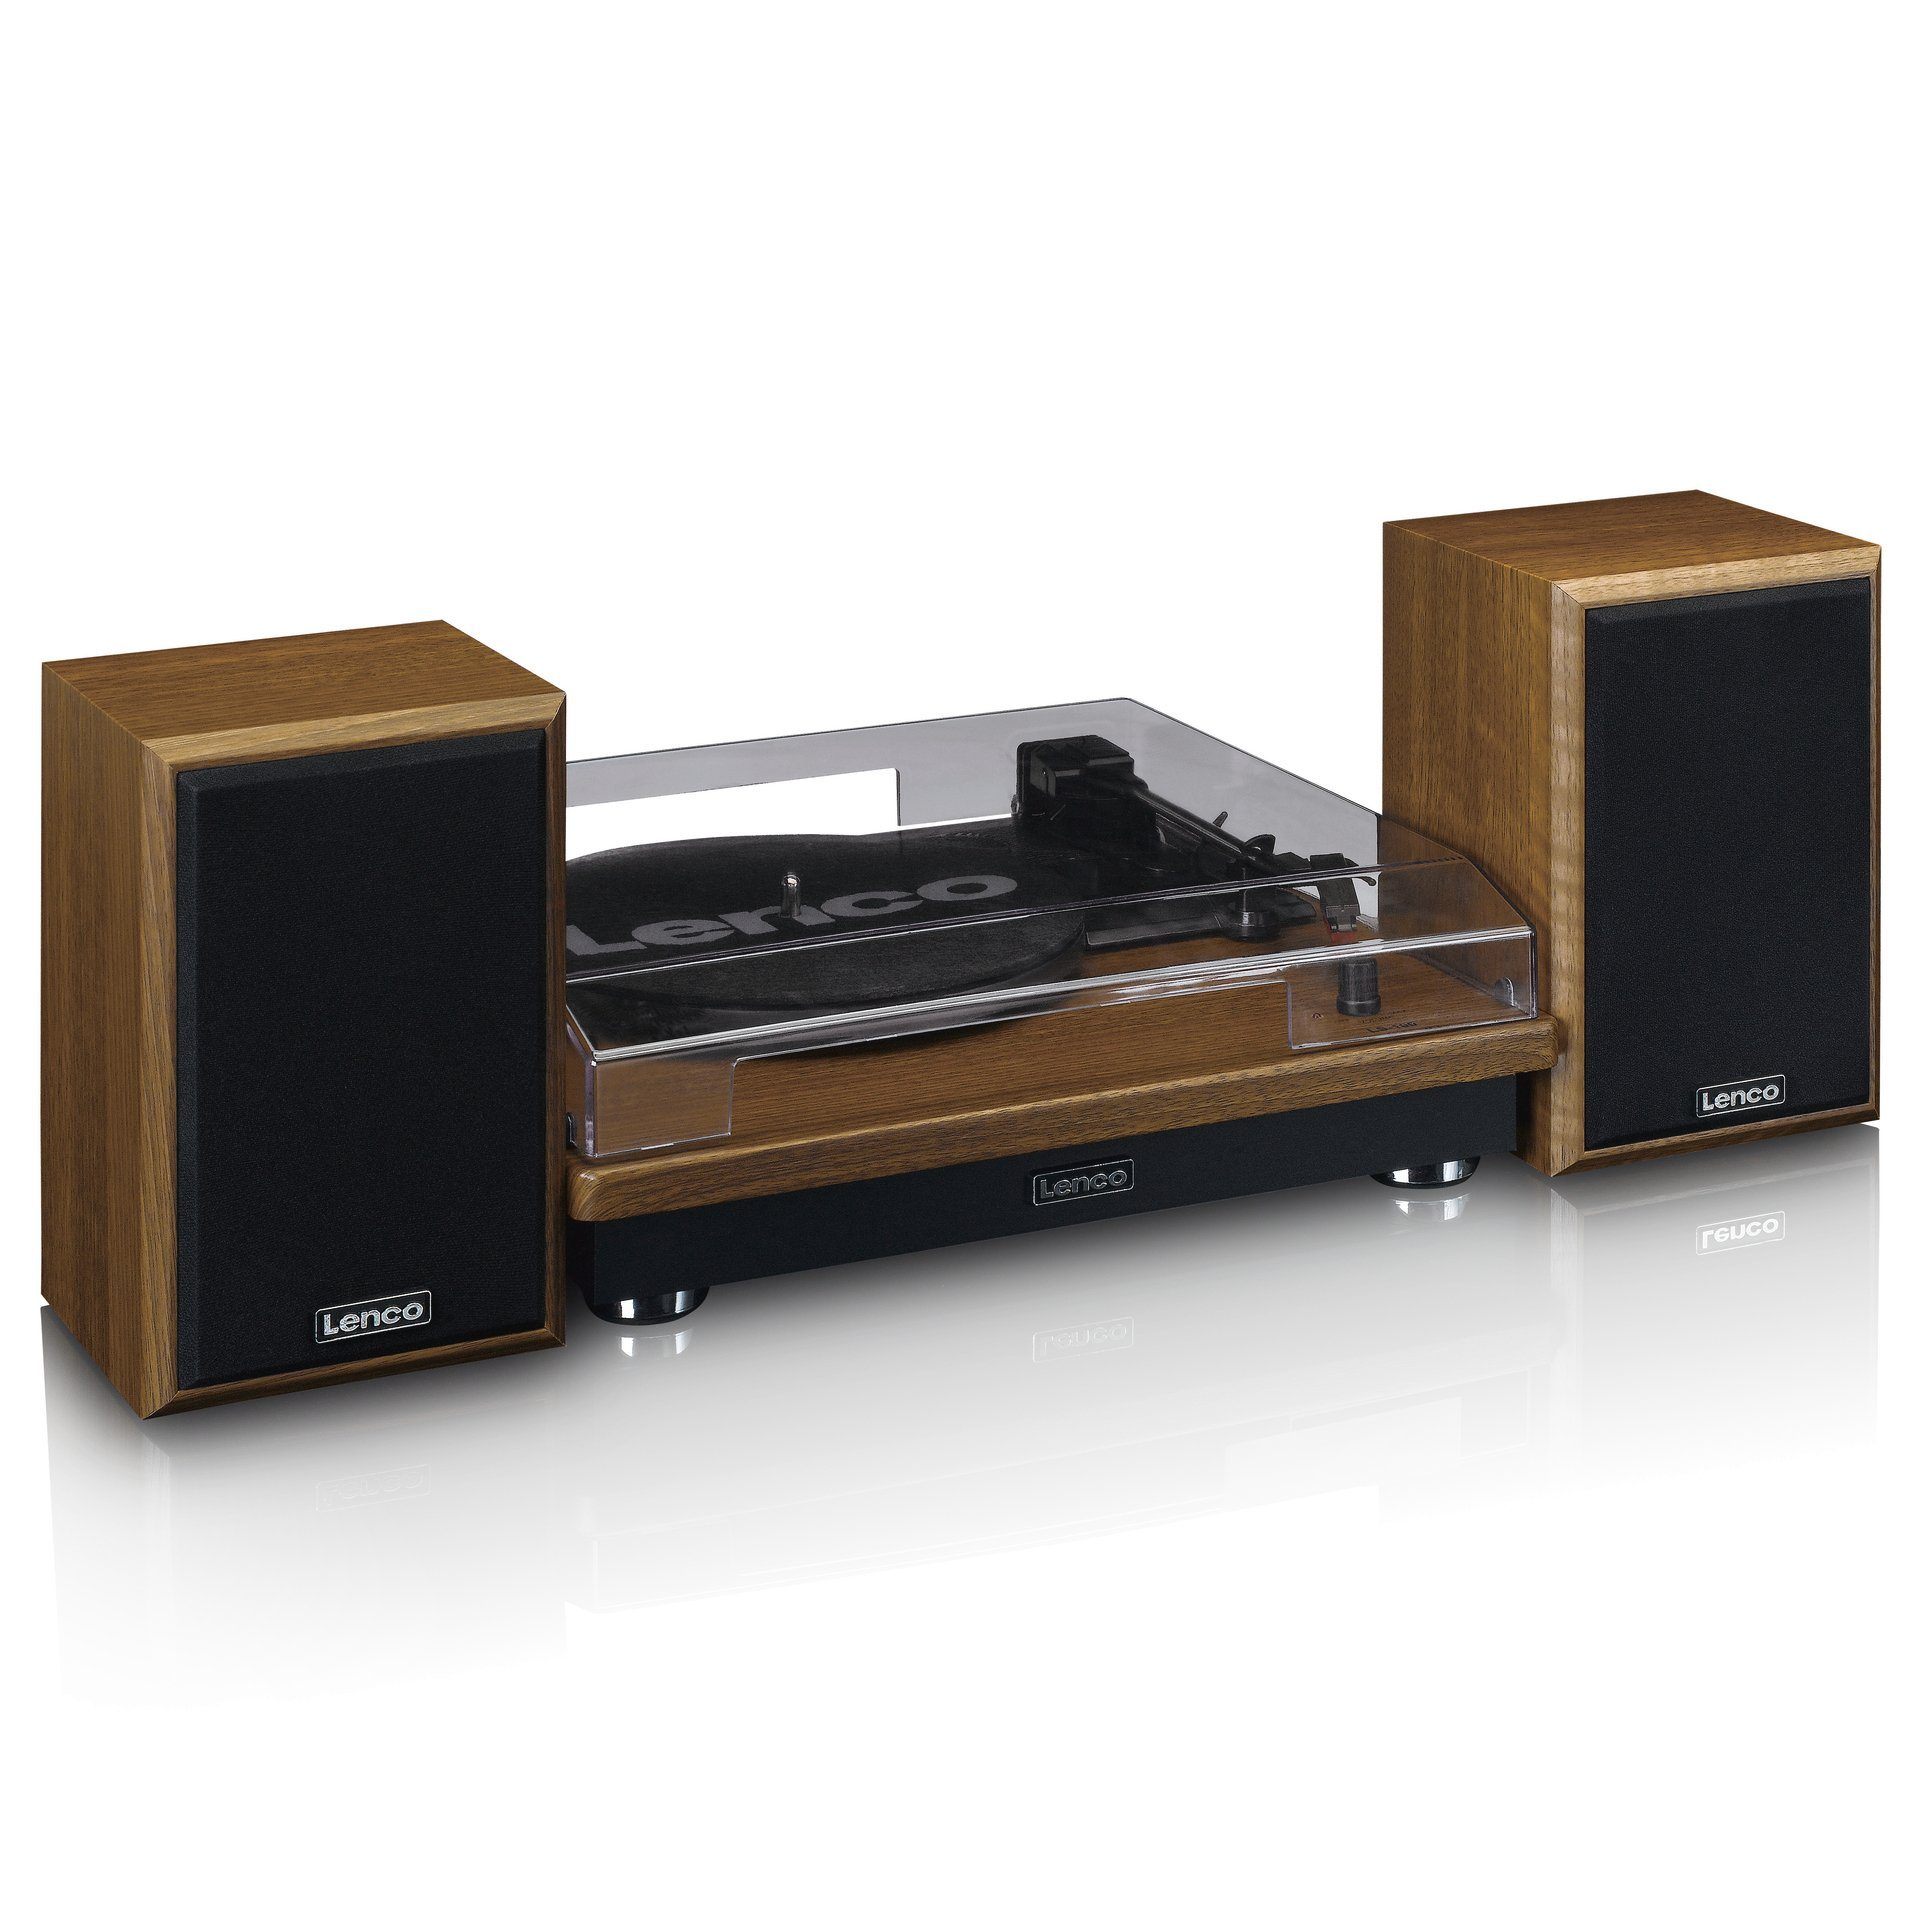 und Lenco externen Holz mit Plattenspieler Lautsprechern Plattenspieler Bluetooth 2 (Riemenantrieb)